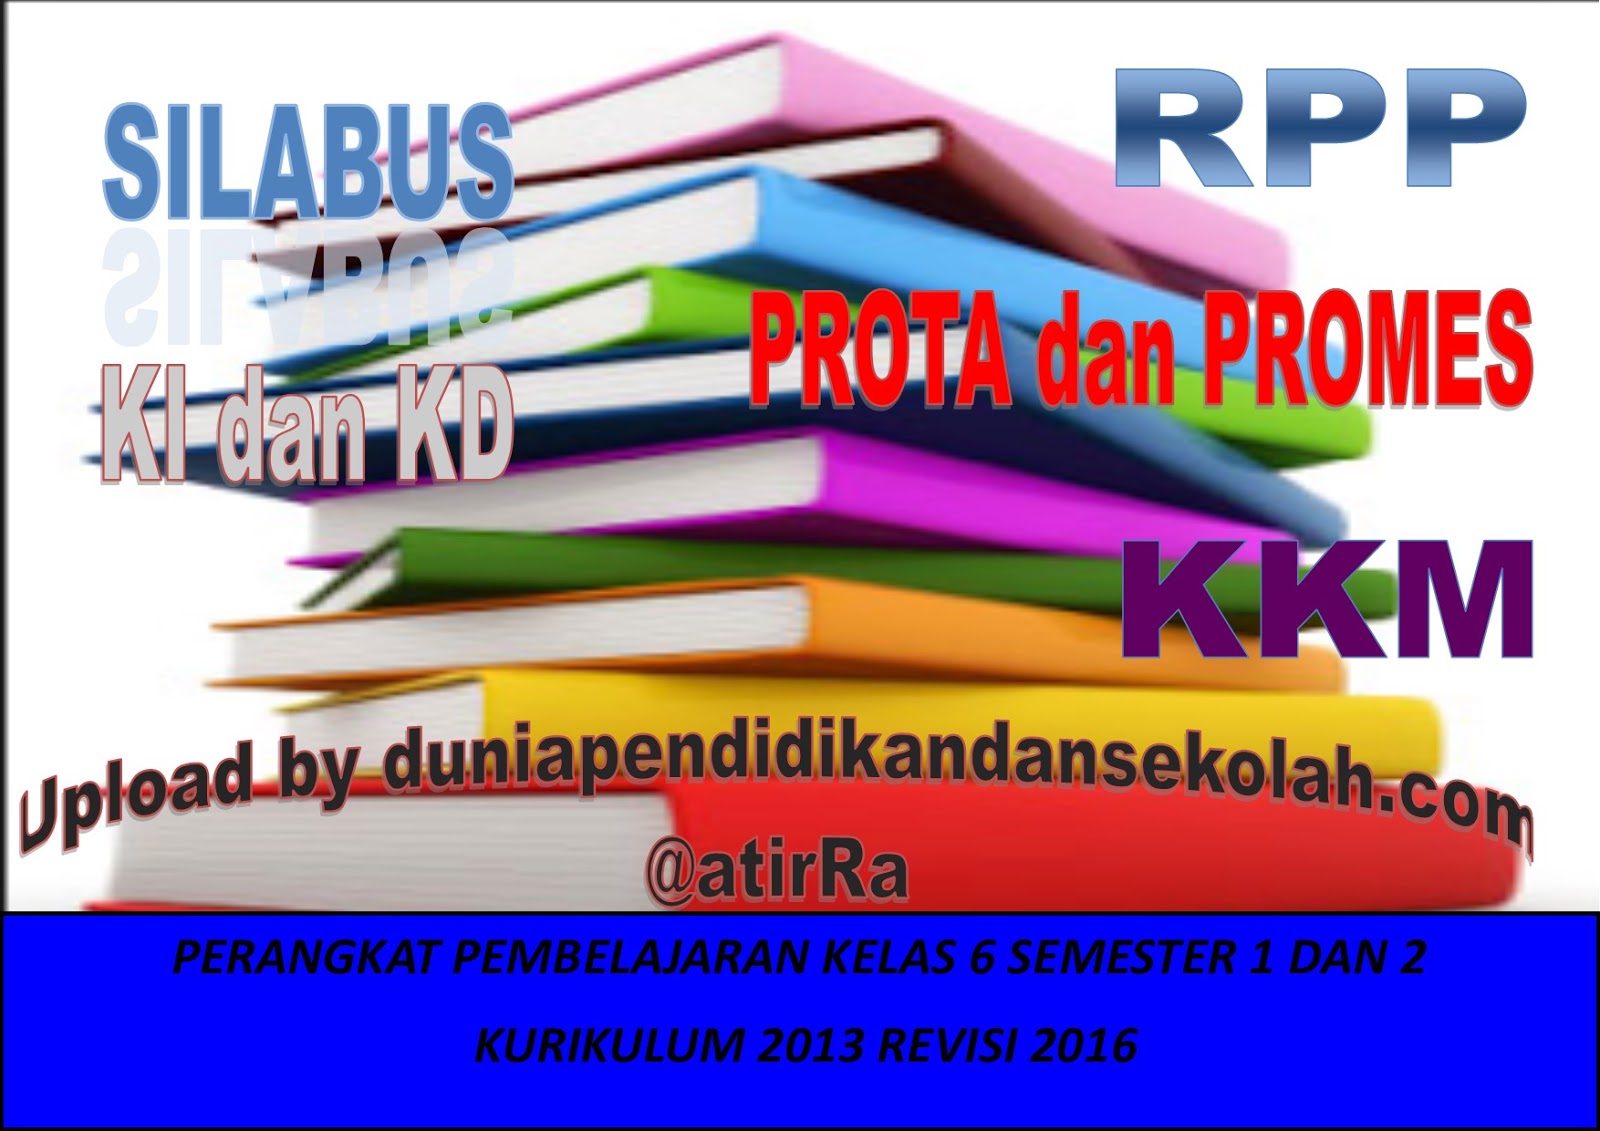 Download RPP Kelas 6 Kurikulum 2013 Revisi 2016 serta KD dan Ki dan Silabus